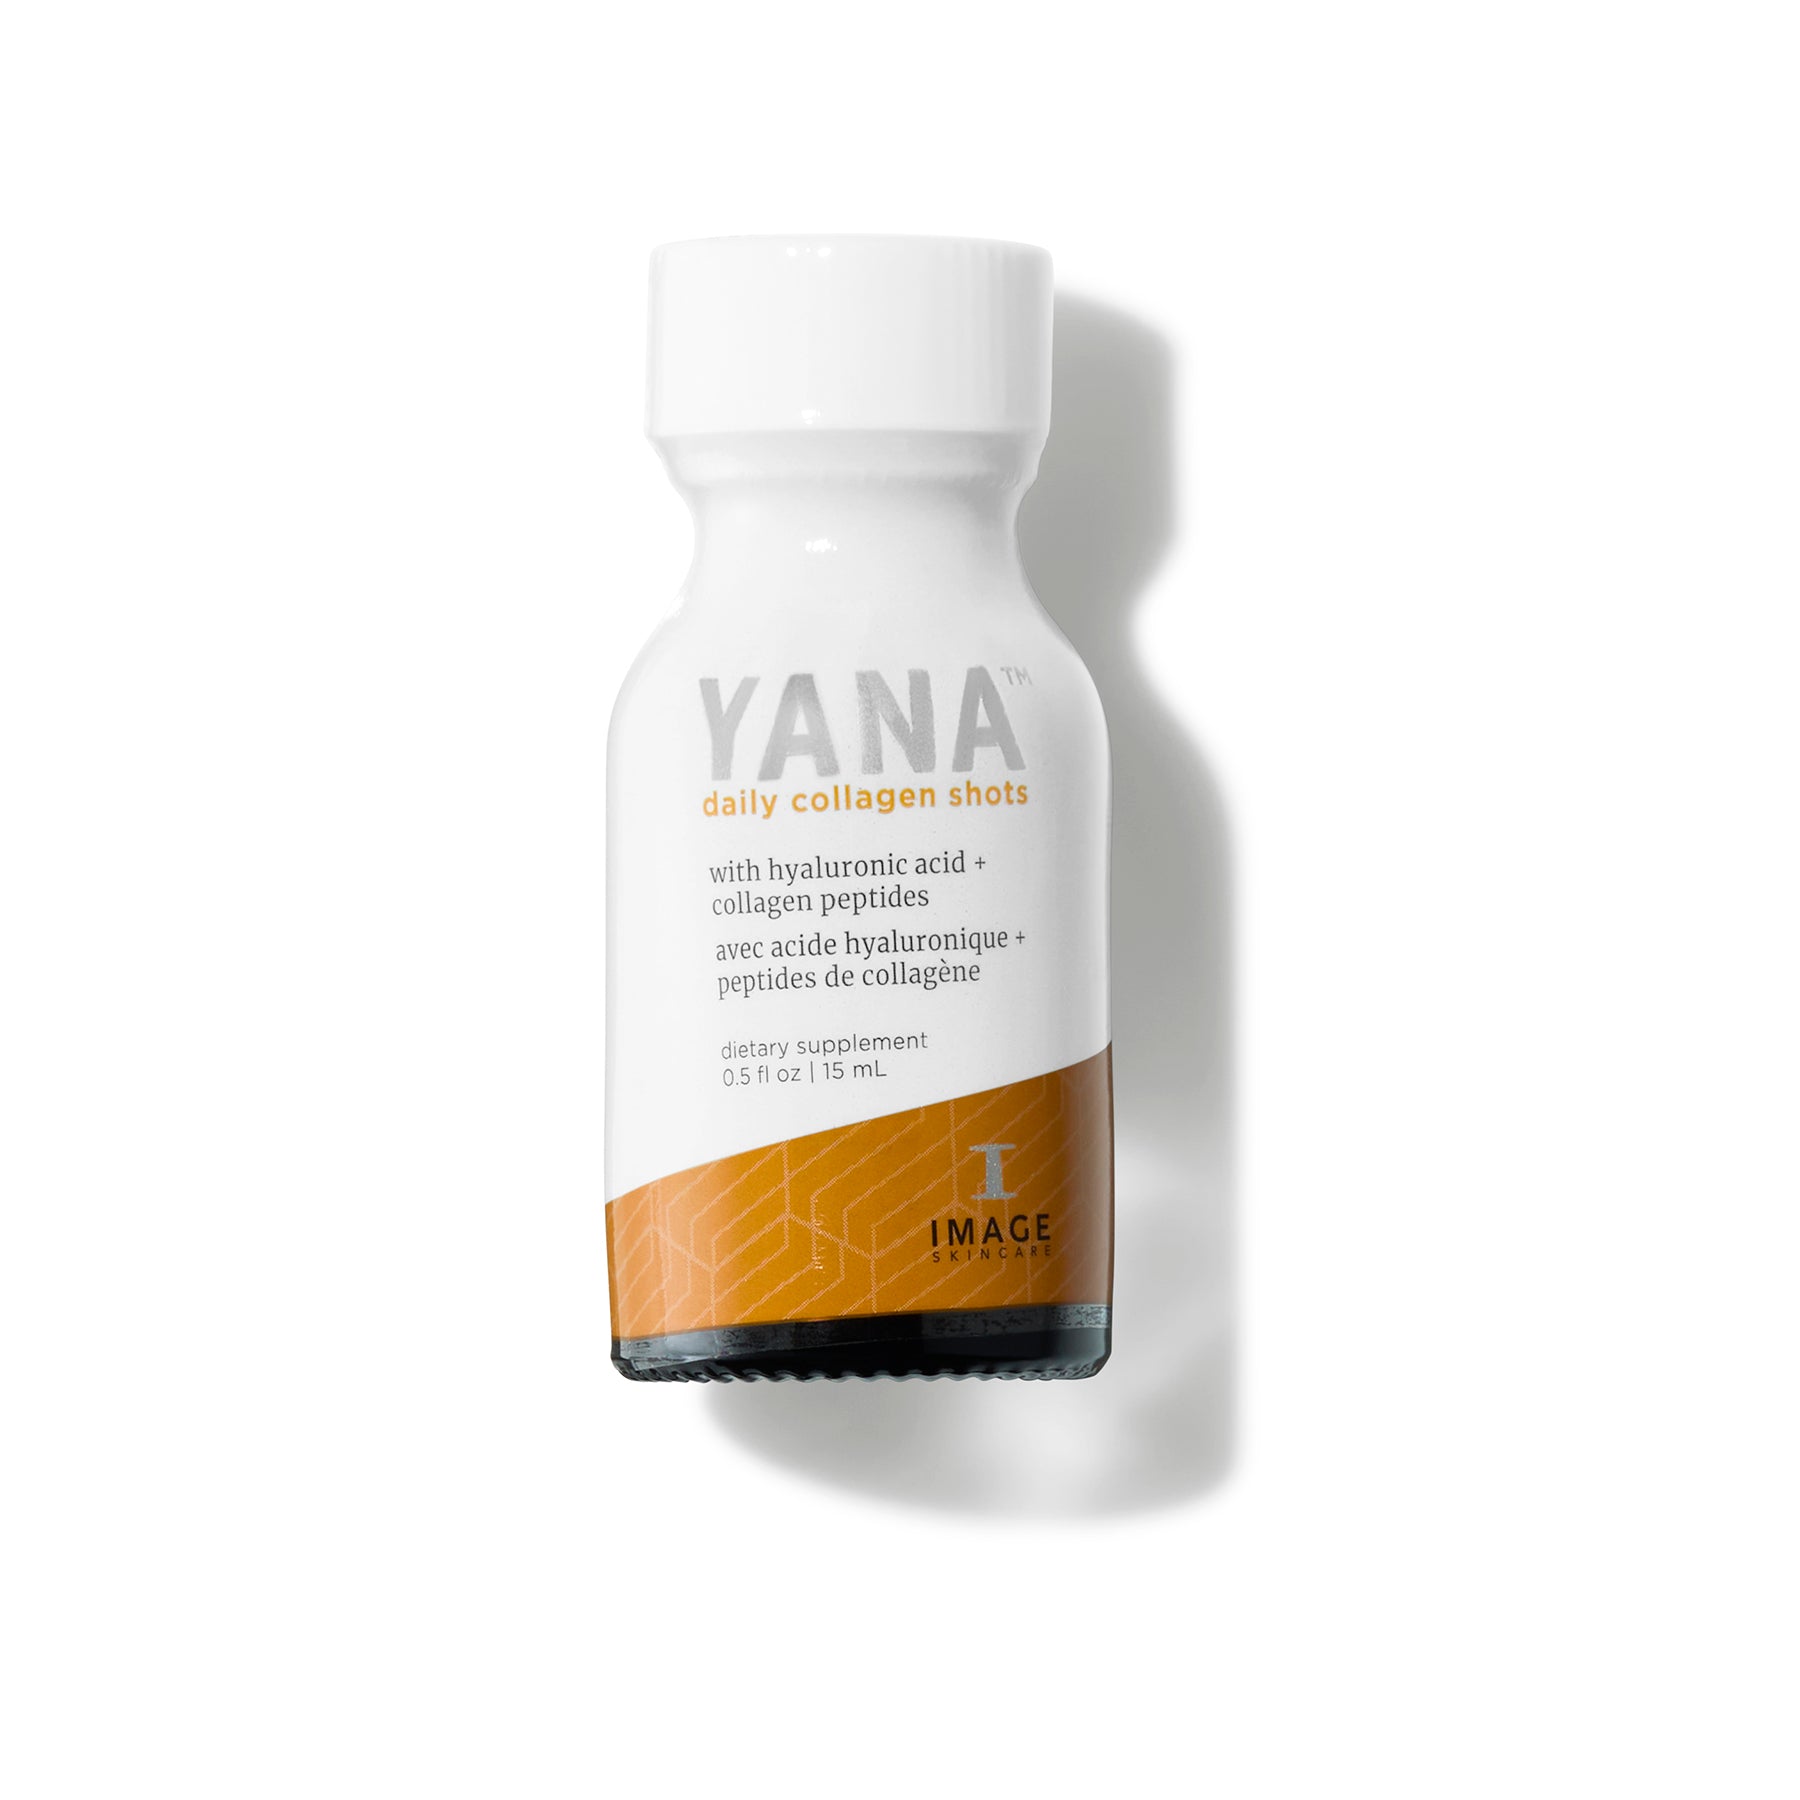 YANA™ daily collagen shots